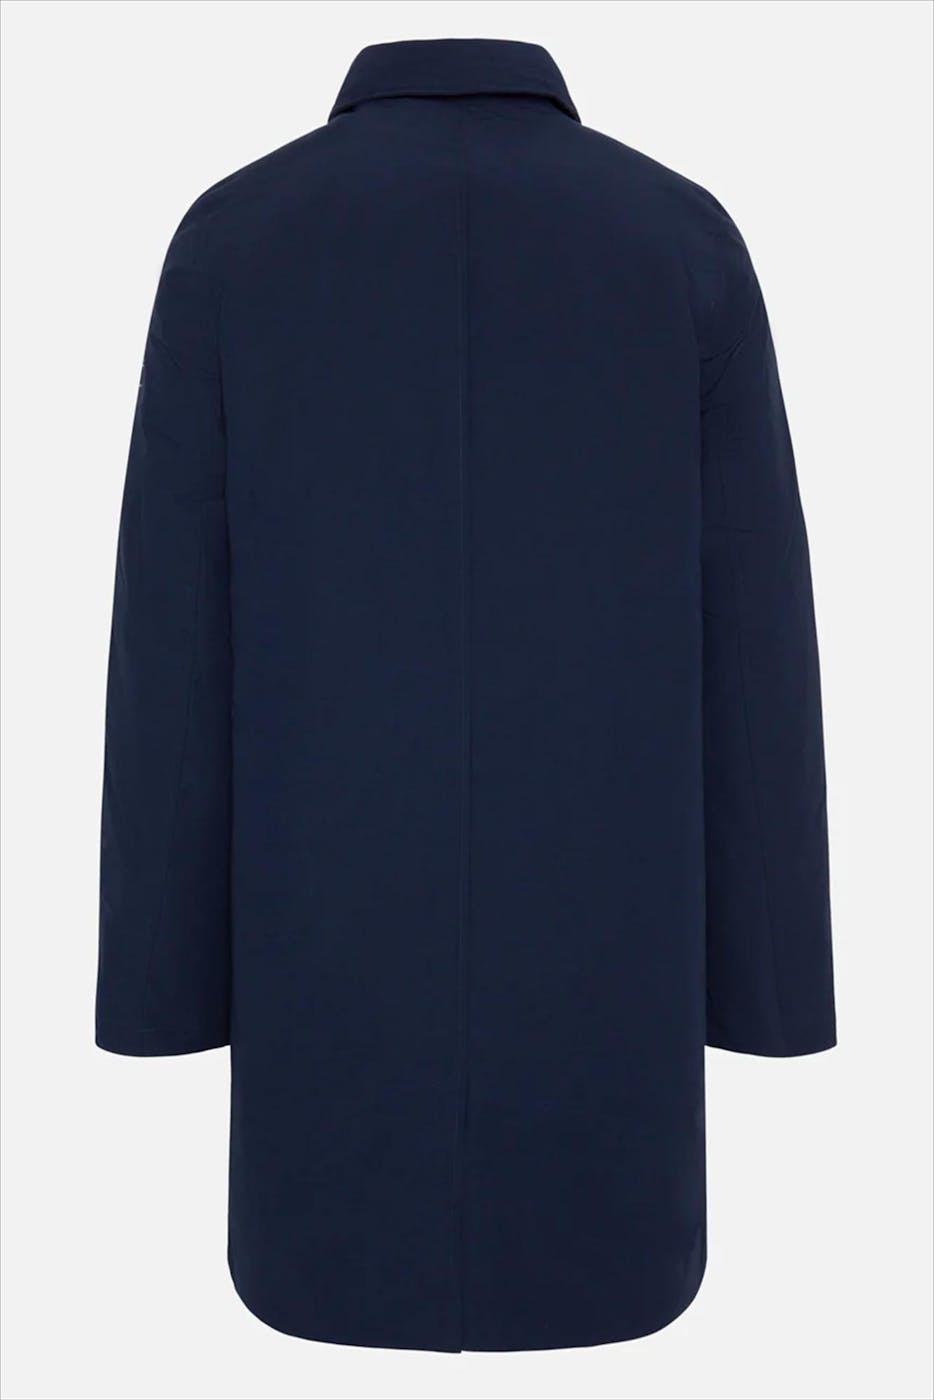 ECOALF - Donkerblauwe Mey jas